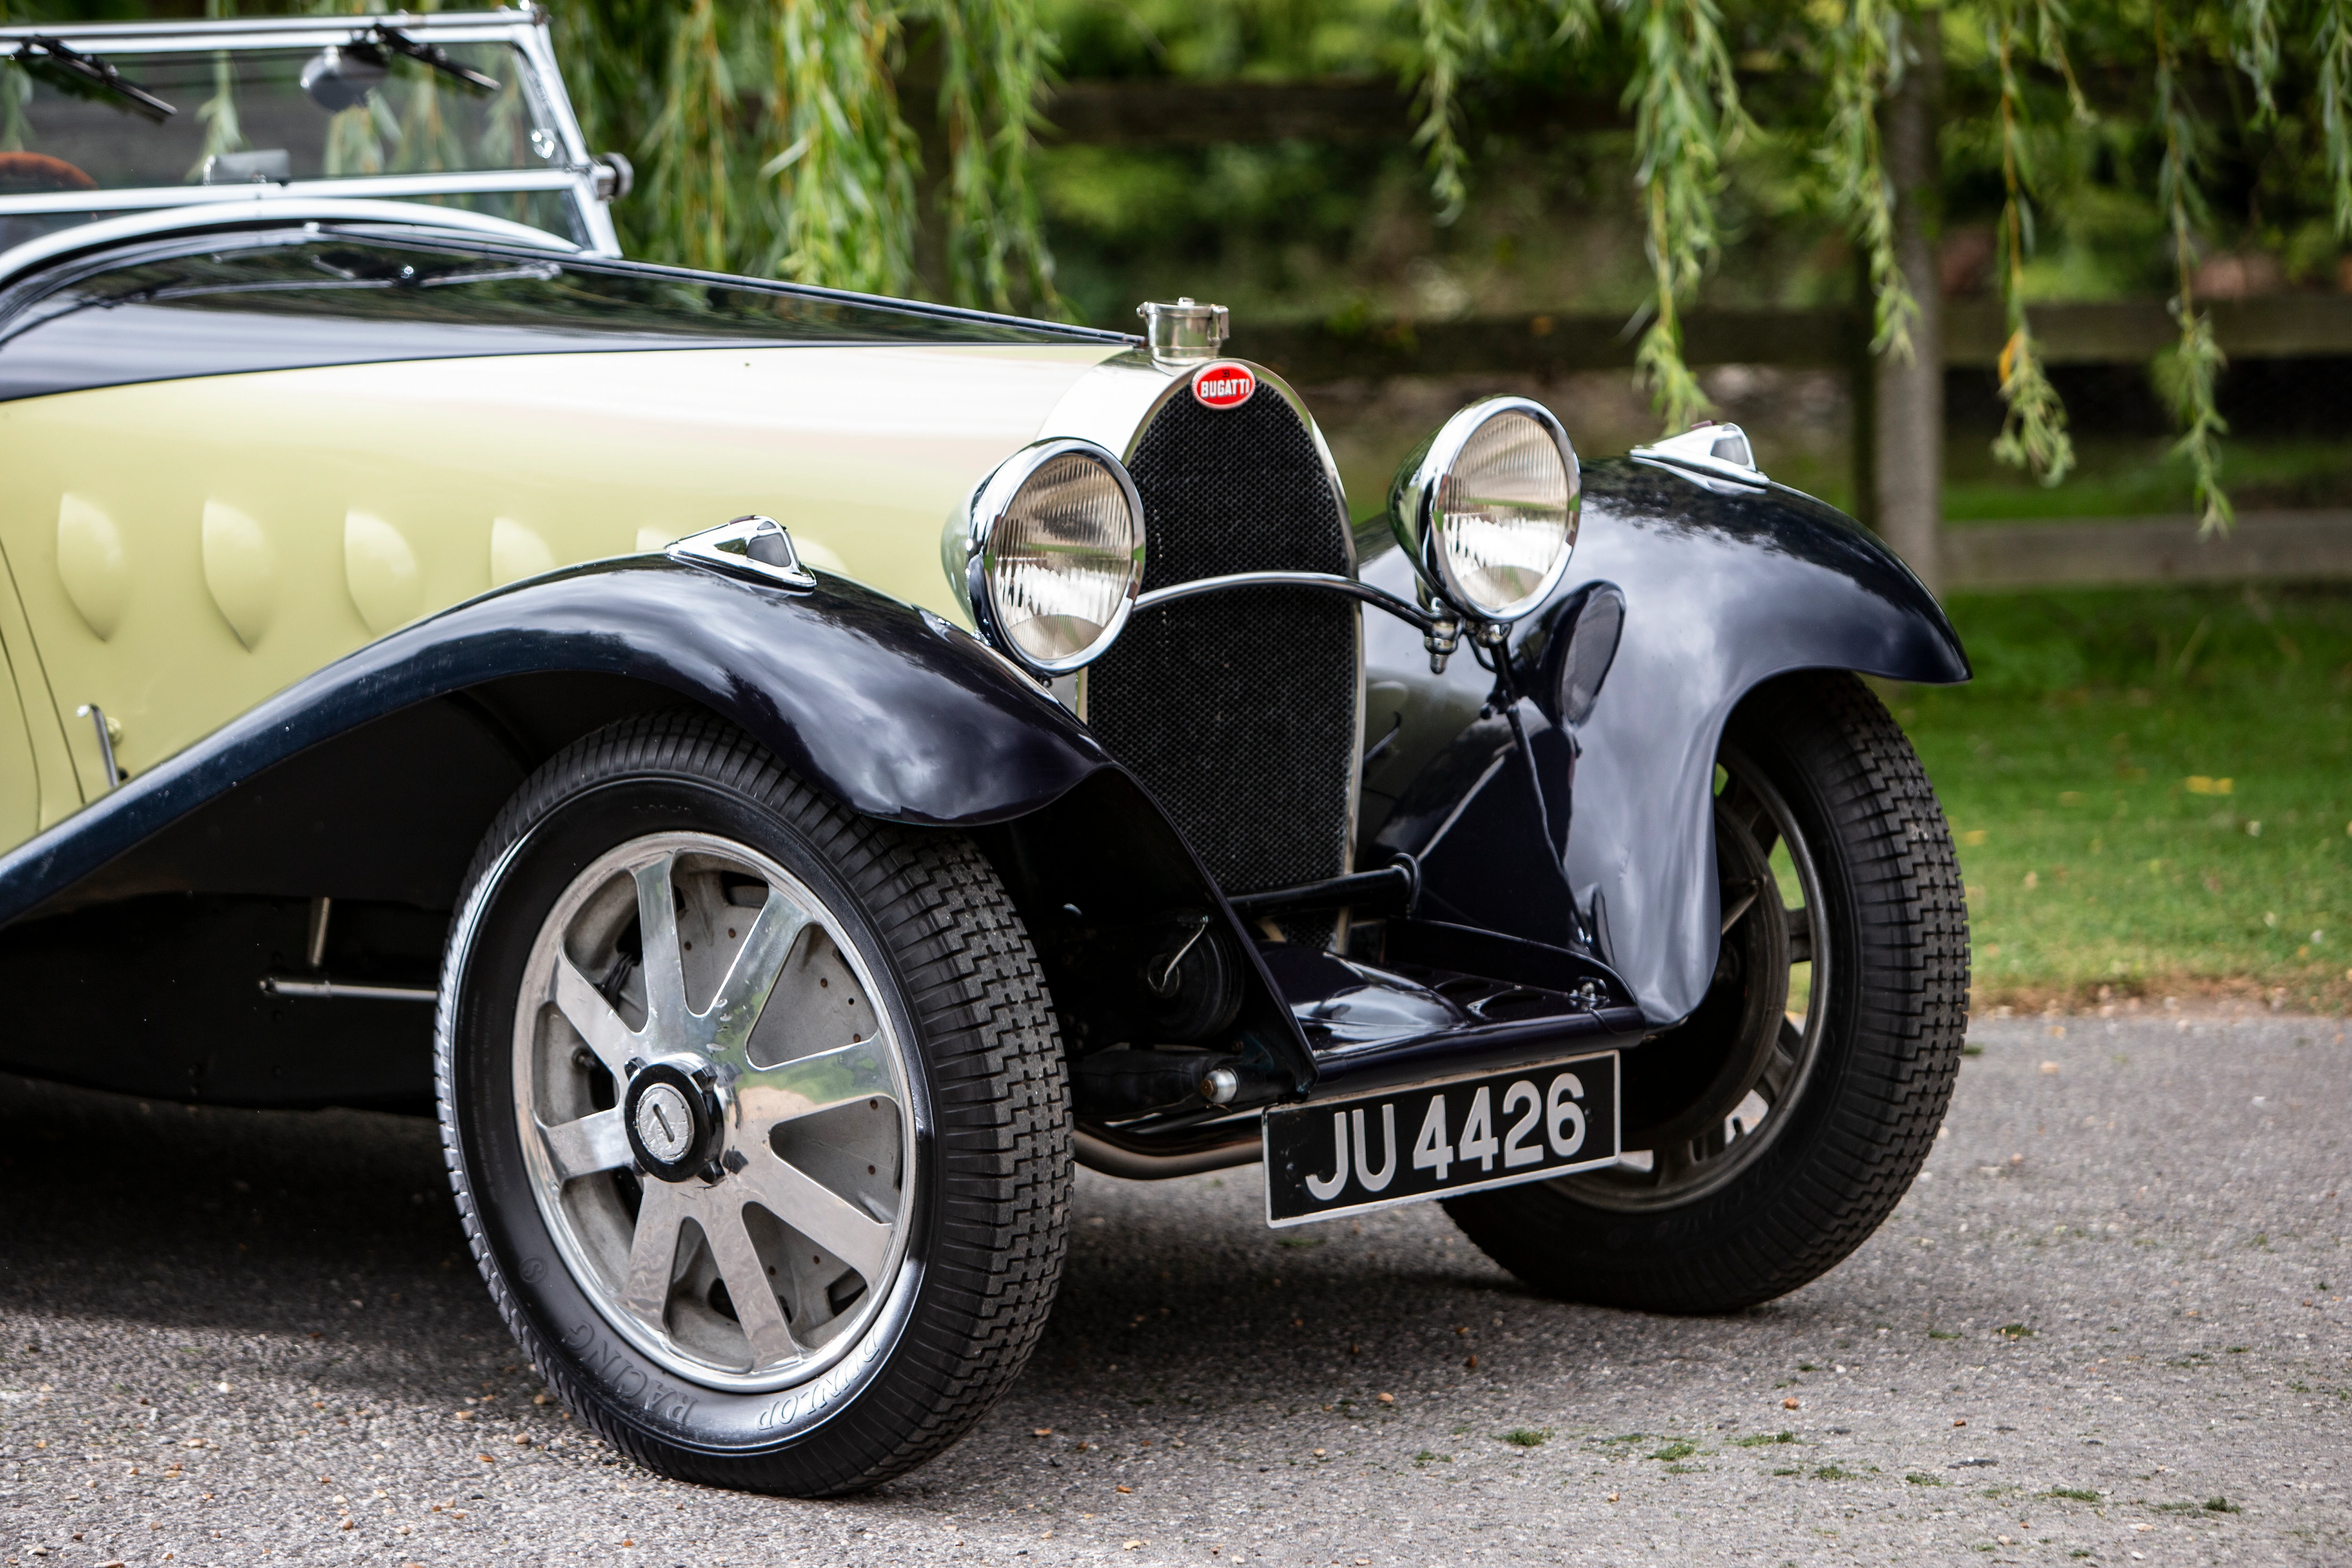 Bugatti Type 55 Super Sport (chasis 55221). ﻿Un entusiasta de Bugatti pagó 5,07 millones de dólares por un Type 55 de 1931 en París en febrero pasado. Esto convirtió al vehículo con el número de chasis 55221 en el automóvil más caro que se vendió en una de las subastas de Rétromobile 2020. Se trata de un vehículo excepcional: Louis Chiron y el conde Guy Bouriat-Quintart lo co-condujeron como un coche de carreras de fábrica en las 24 Horas de Le Mans en 1932. El propietario posterior puso una carrocería Figoni única en el chasis. Con este cuerpo, el Type 55 permaneció en la familia durante más de 60 años. Su motor turboalimentado de 8 cilindros y 2,3 litros produce una potencia de unos 160 CV.